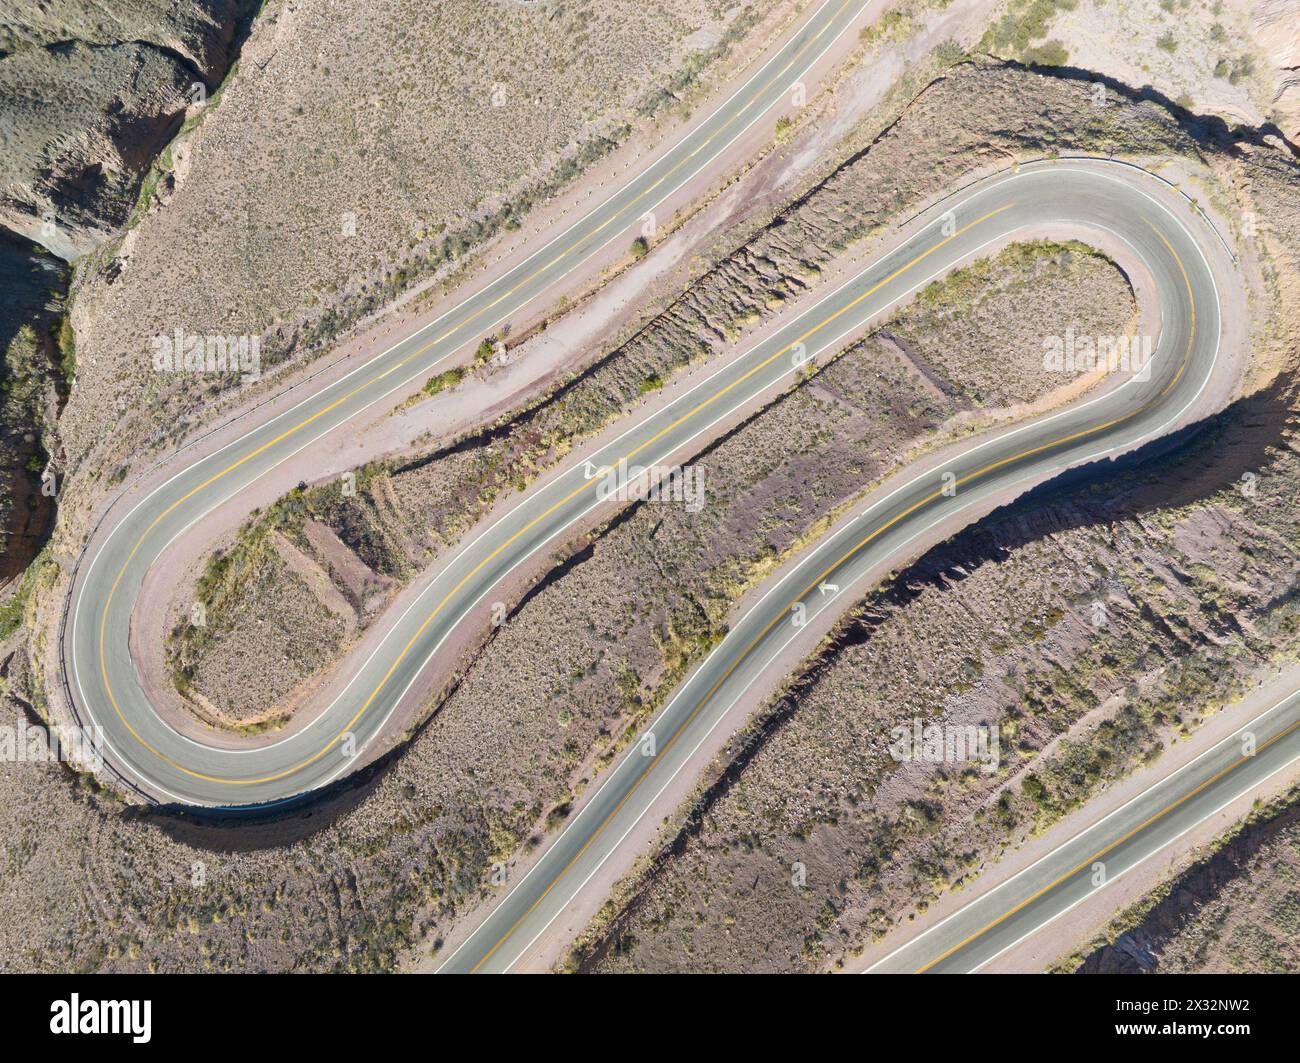 Un dettaglio della strada tortuosa per Salinas Grandes (Cuesta del Lipan), Tumbaya, Jujuy, Argentina. Foto Stock